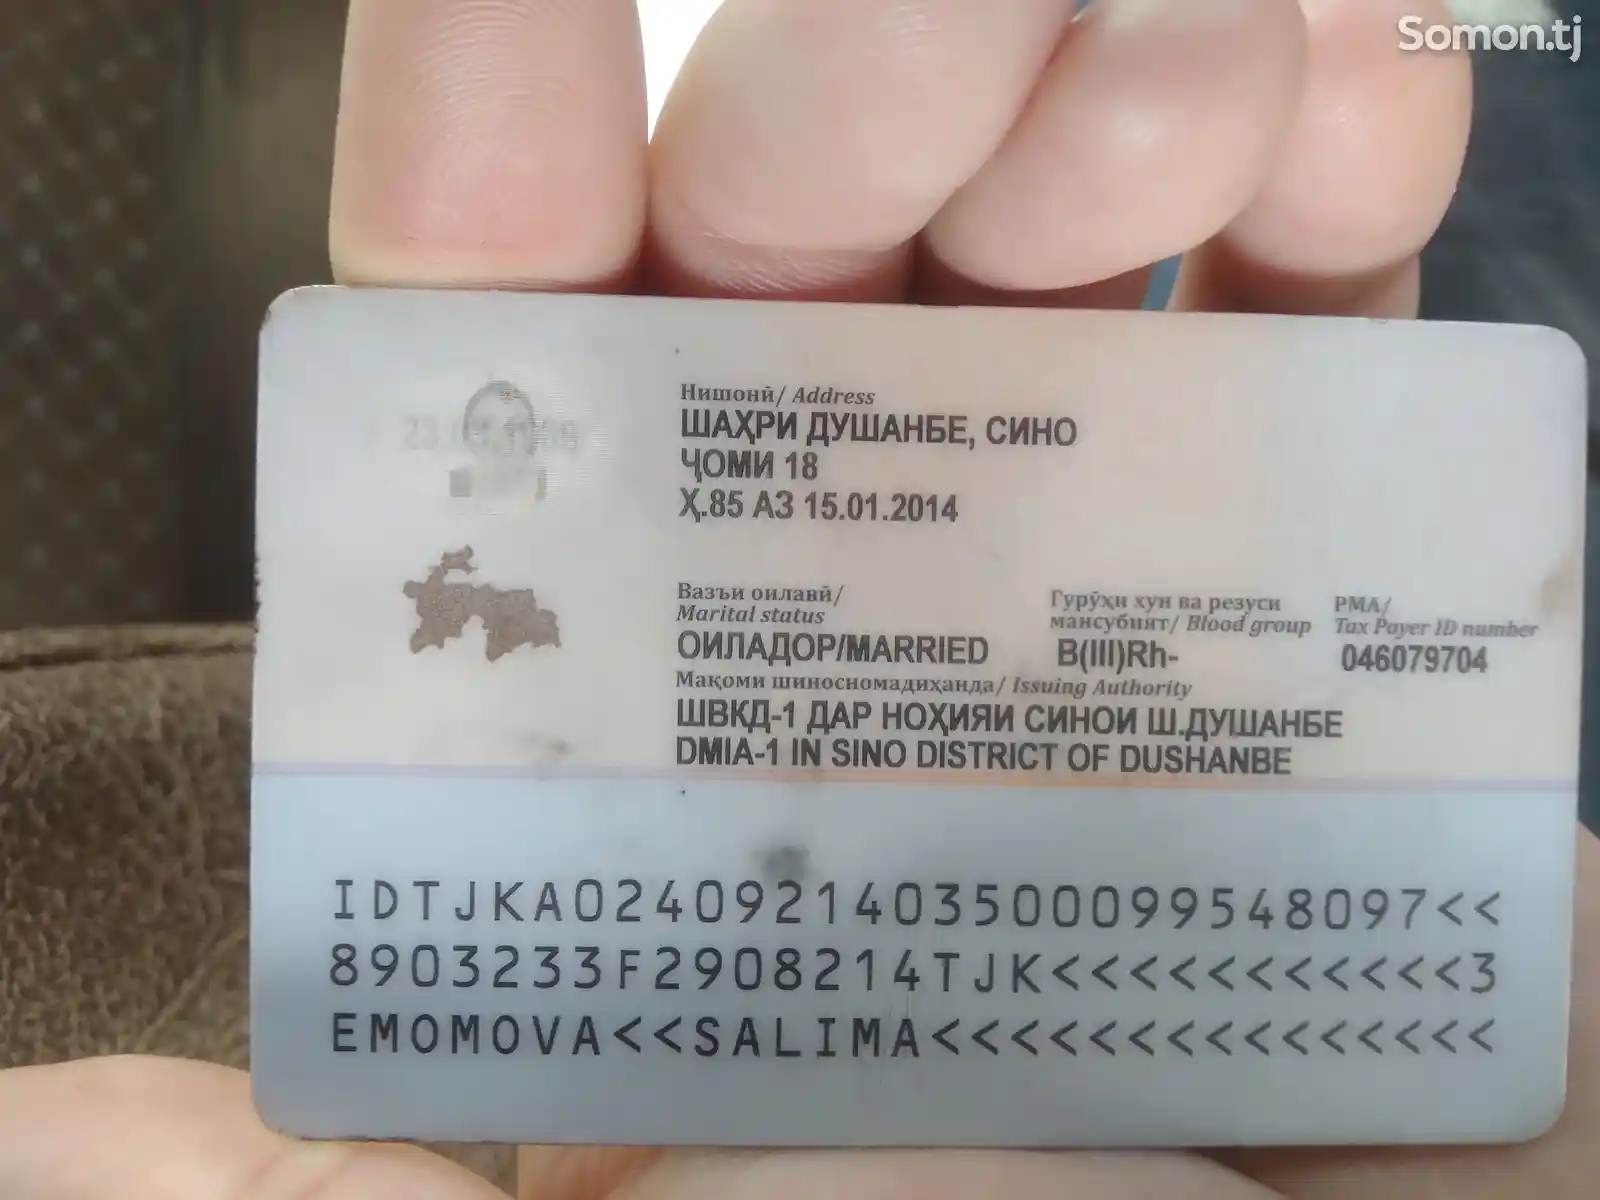 Найден паспорт на имя Эмомова Салима Давлатовна-2